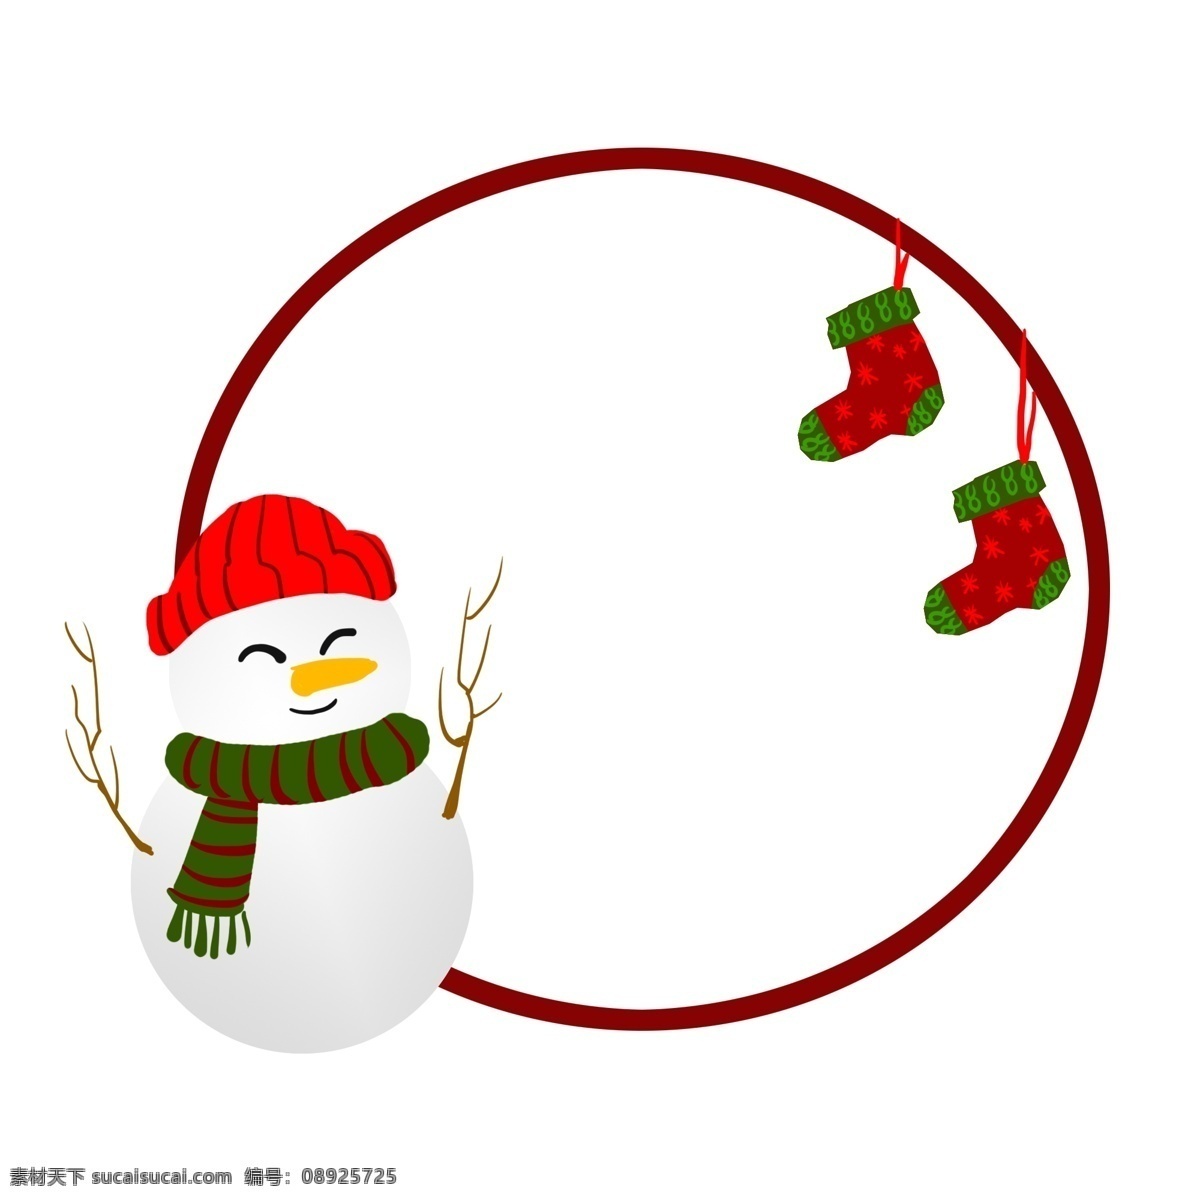 手绘 圣诞节 圆形 雪人 边框 插画 创意 欢庆圣诞节 红色的袜子 愉快的圣诞节 可以 收礼 物 节日